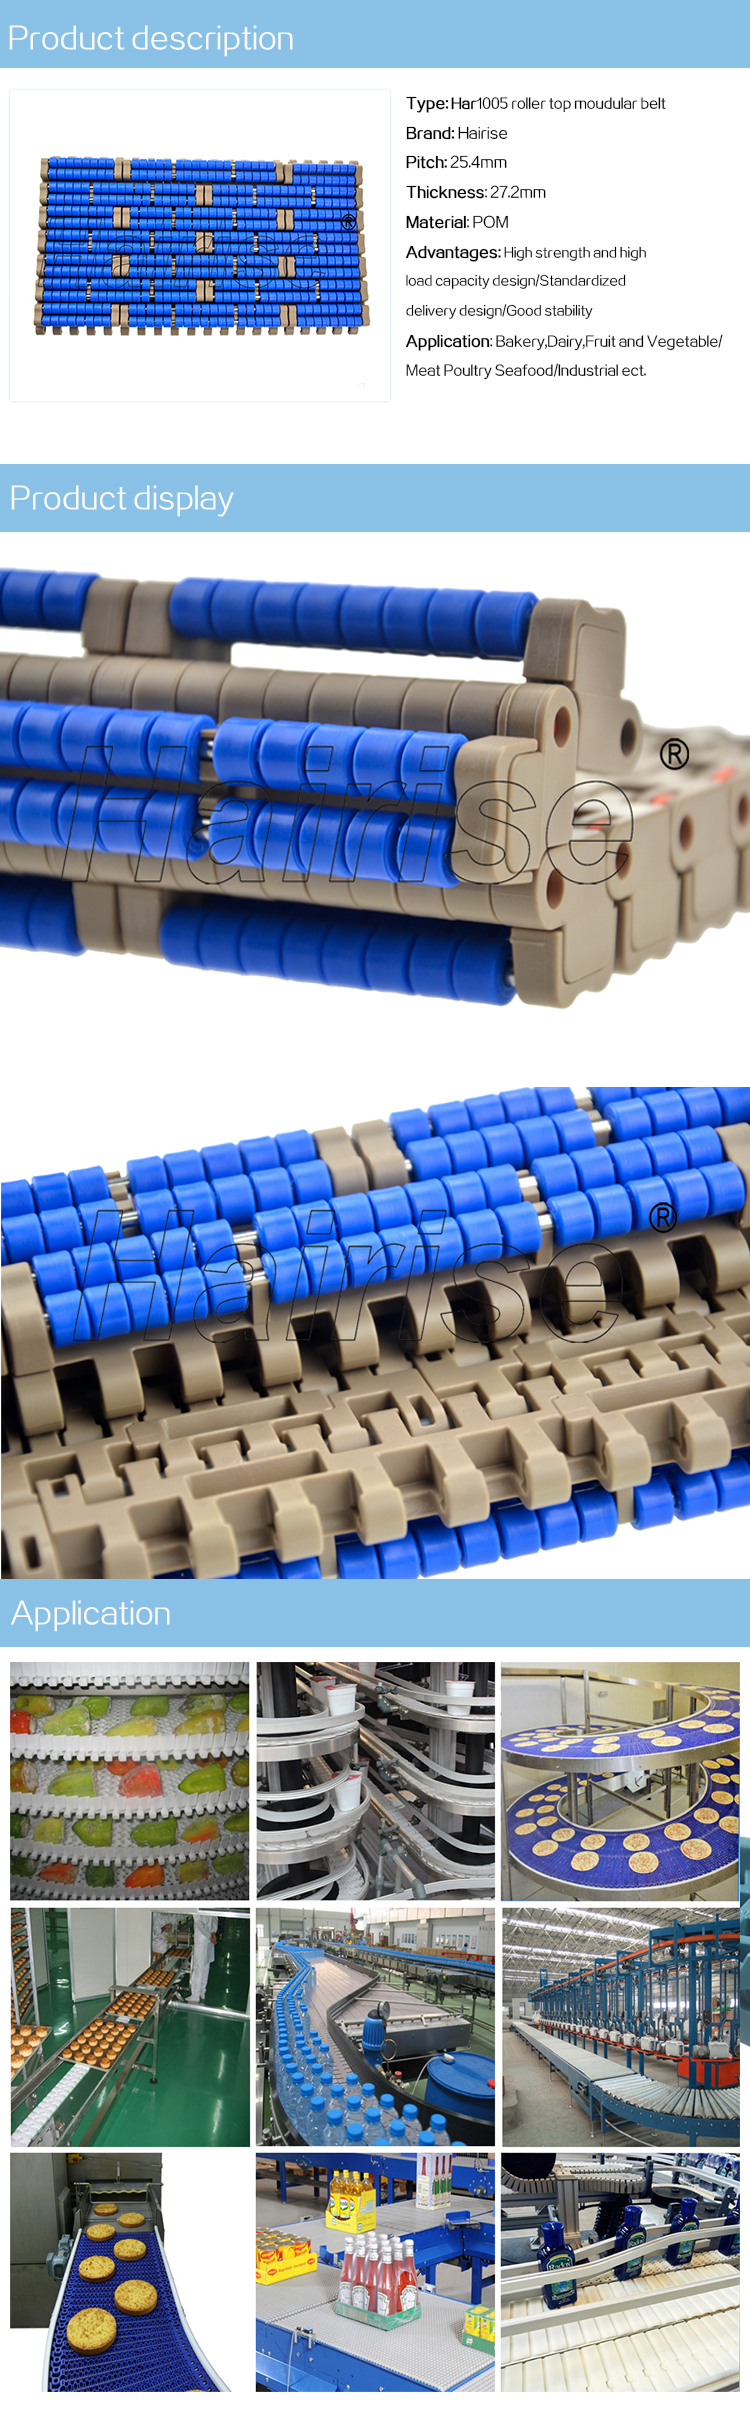 1005 roller top modular belt.jpg